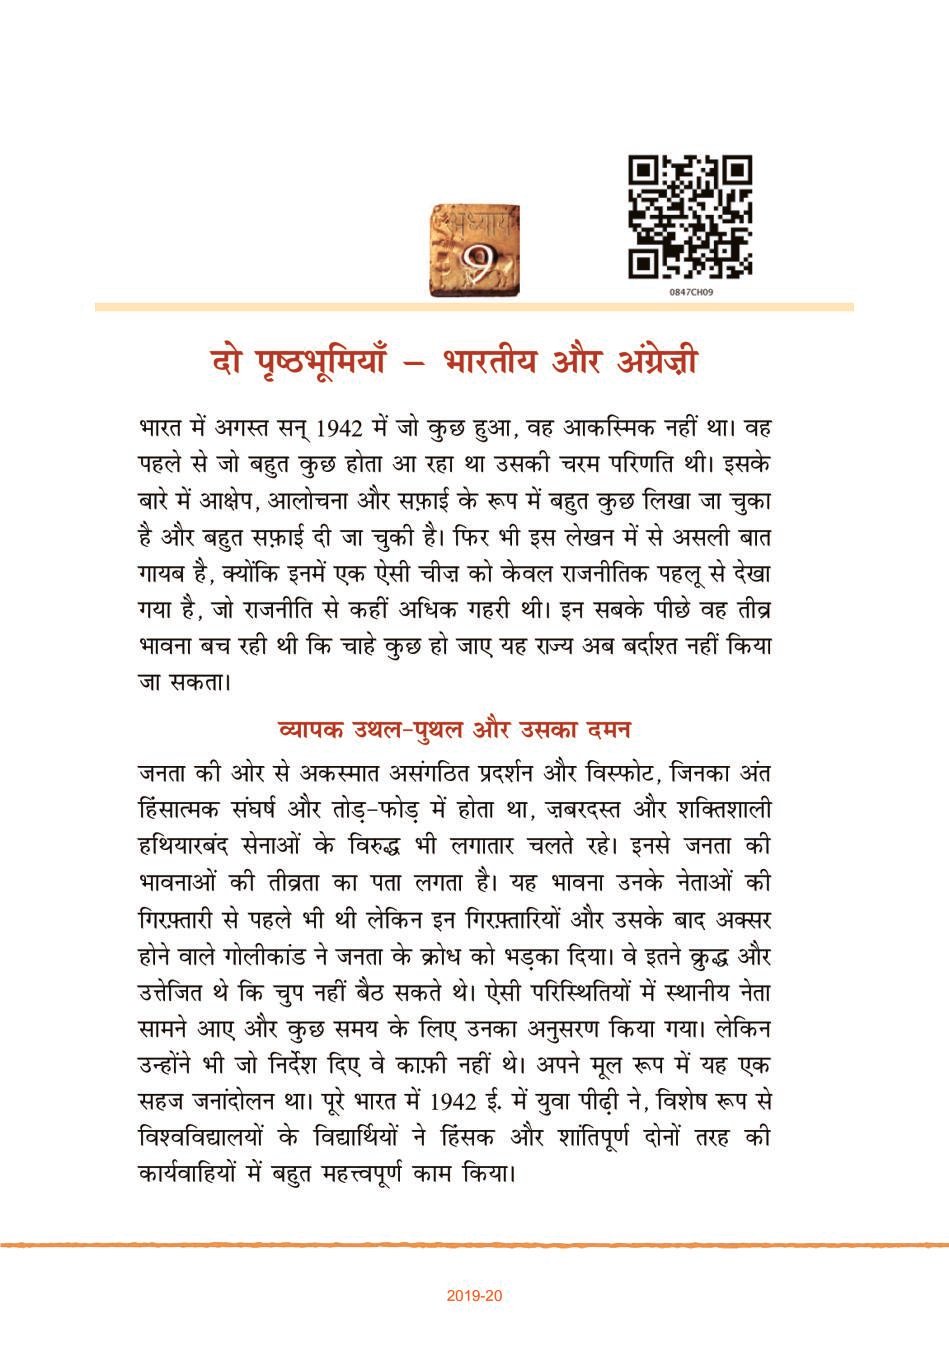 NCERT Book Class 8 Hindi (भारत की खोज) Chapter 9 दो प्रष्ठभूमियाँ – भारतीय और अँग्रेज़ी - Page 1